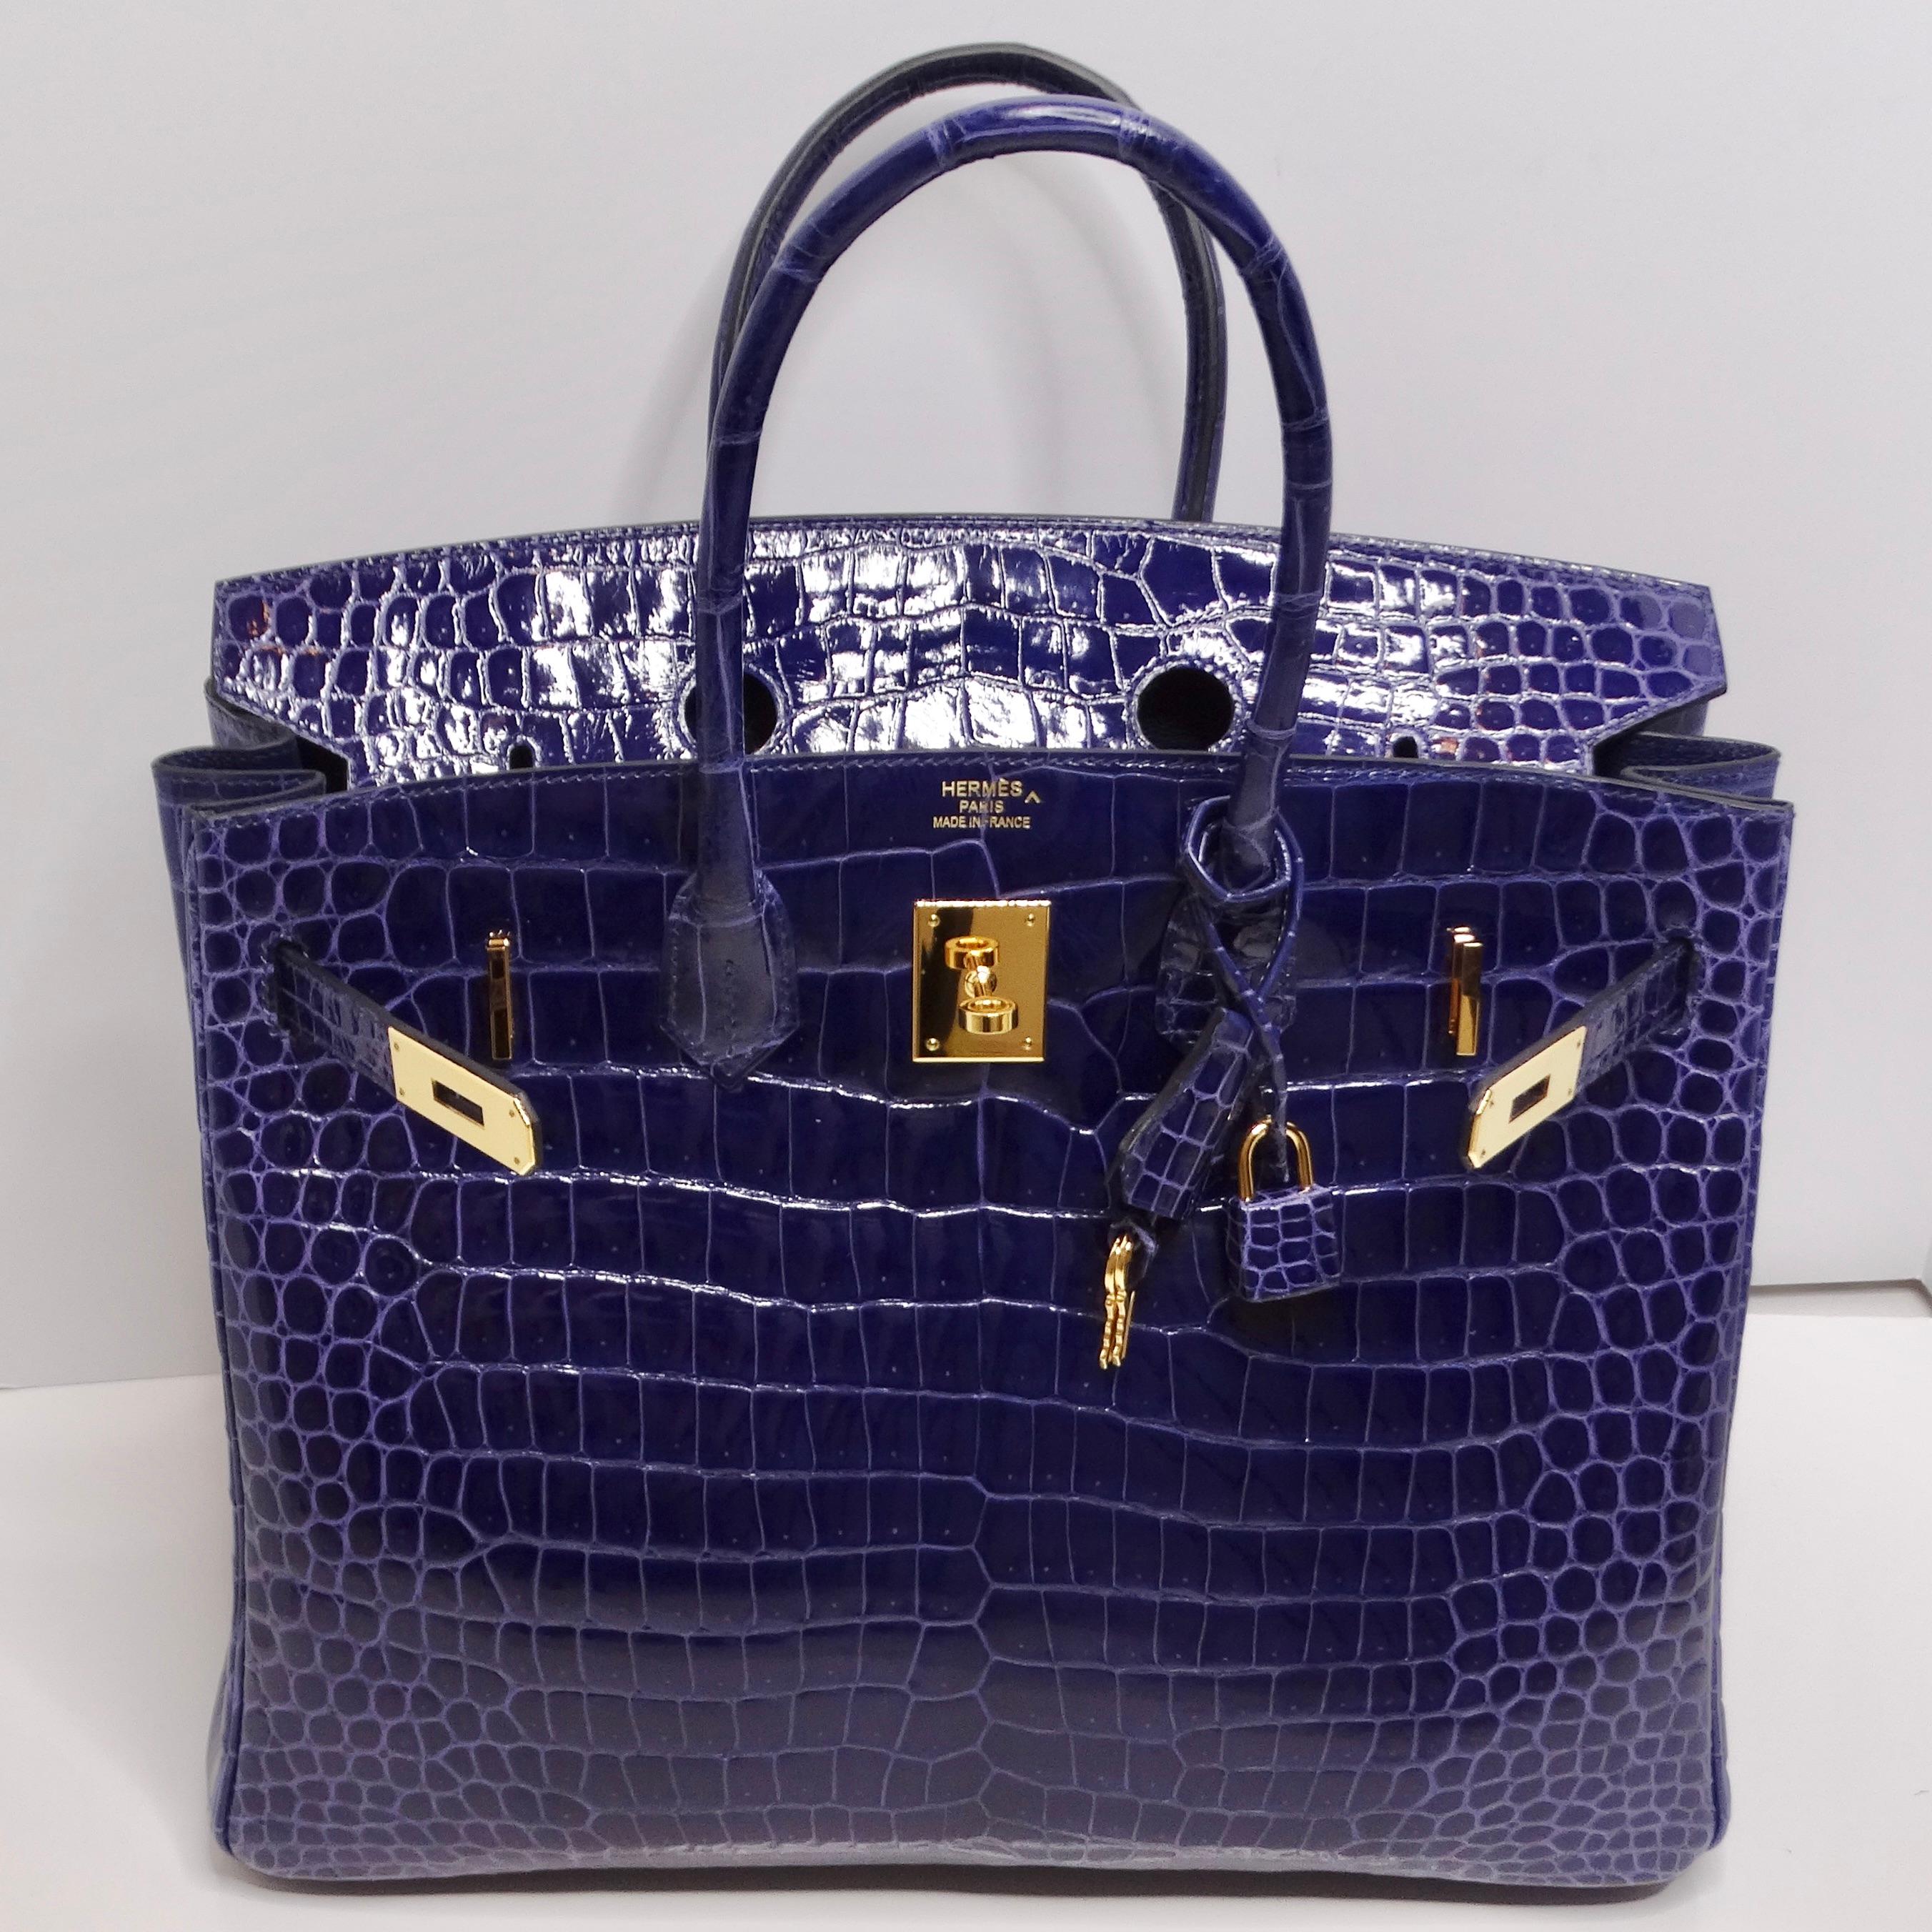 Le sac à main Hermès Birkin 35cm Amethyst Shiny Porosus Crocodile Gold Hardware est l'incarnation même du luxe et de la sophistication. Confectionné en 2020, ce sac à main emblématique témoigne du savoir-faire impeccable et du design intemporel